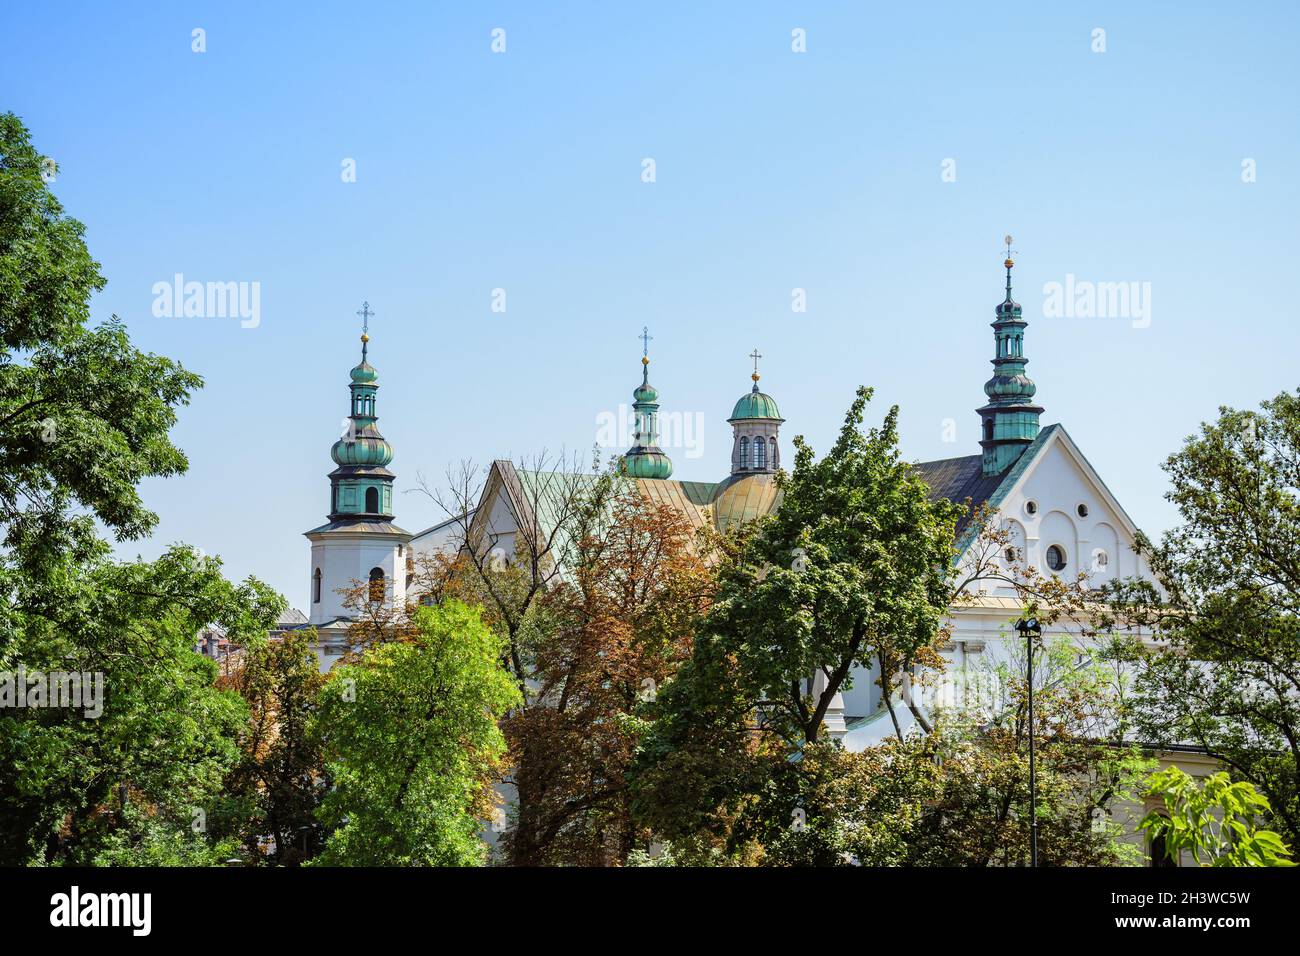 Krakau, Polen. 26. August 2019. Das Wawel Royal Castle ist an einem sonnigen Sommertag von grünen Bäumen umgeben Stockfoto